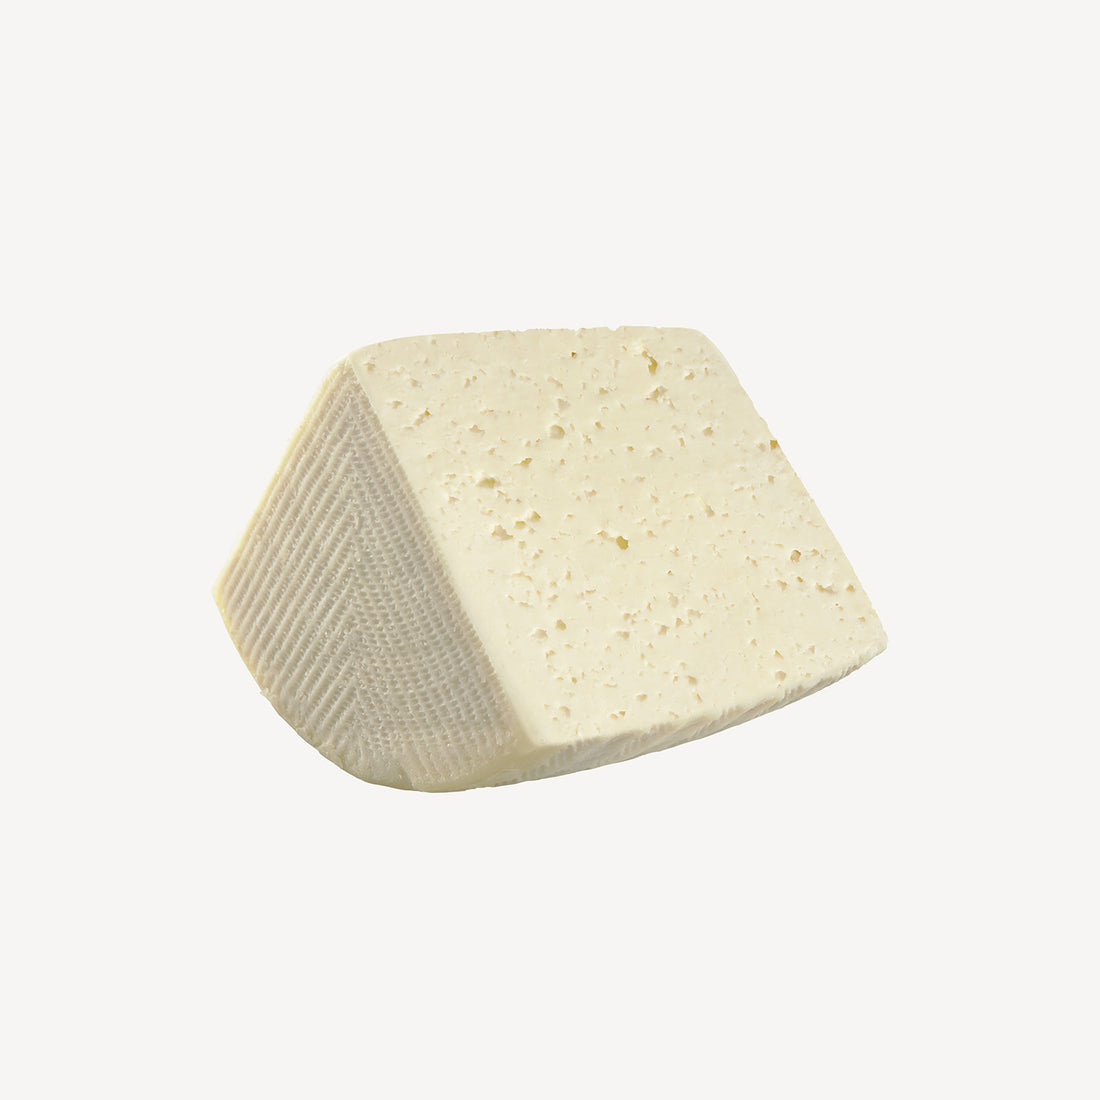 La cuña de queso tierno, un preludio a una experiencia de sabor suave, fresco y deliciosamente ligero, característico de La Solana.